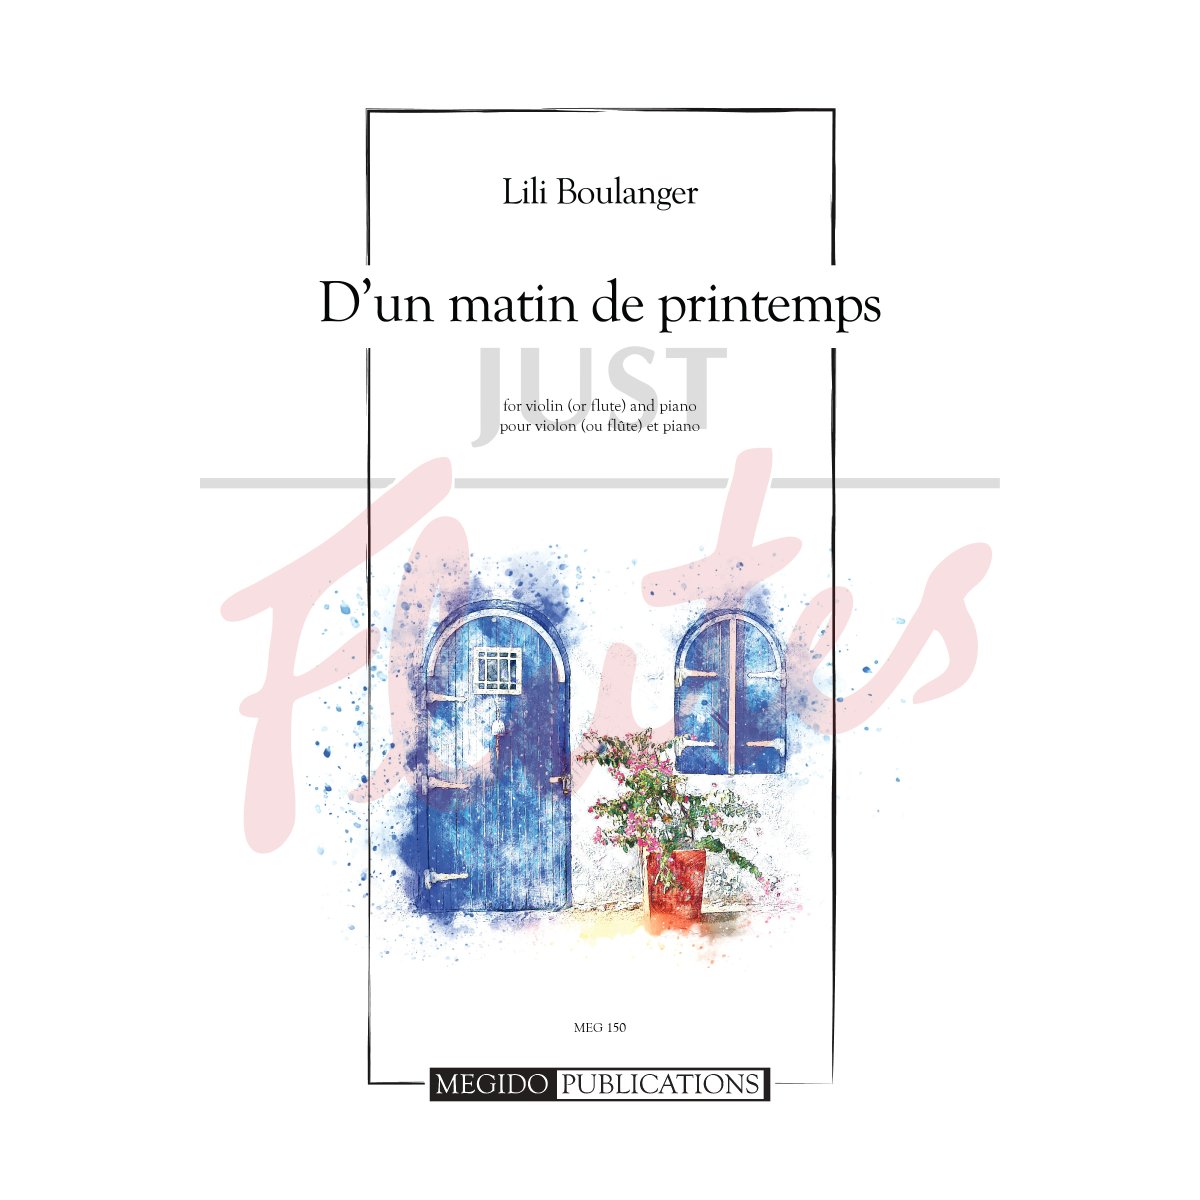 D&#039;un matin de printemps for Violin (or Flute) and Piano